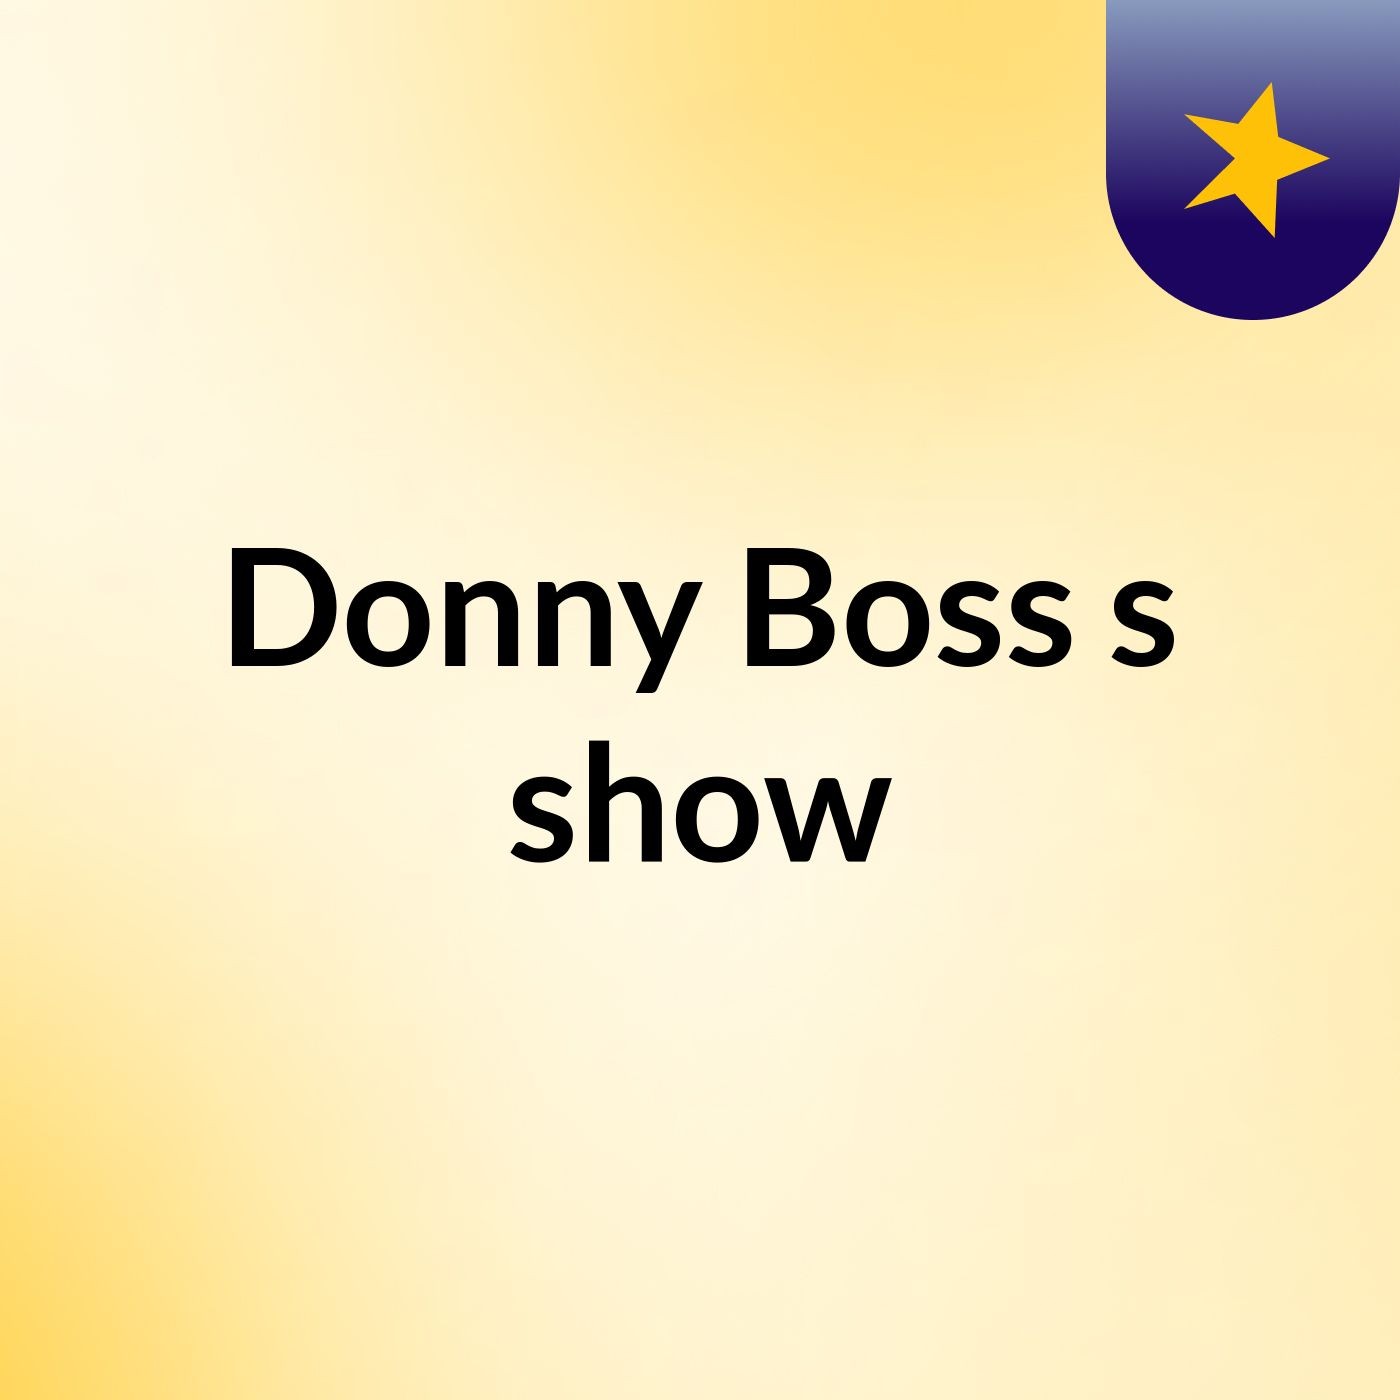 Donny Boss's show